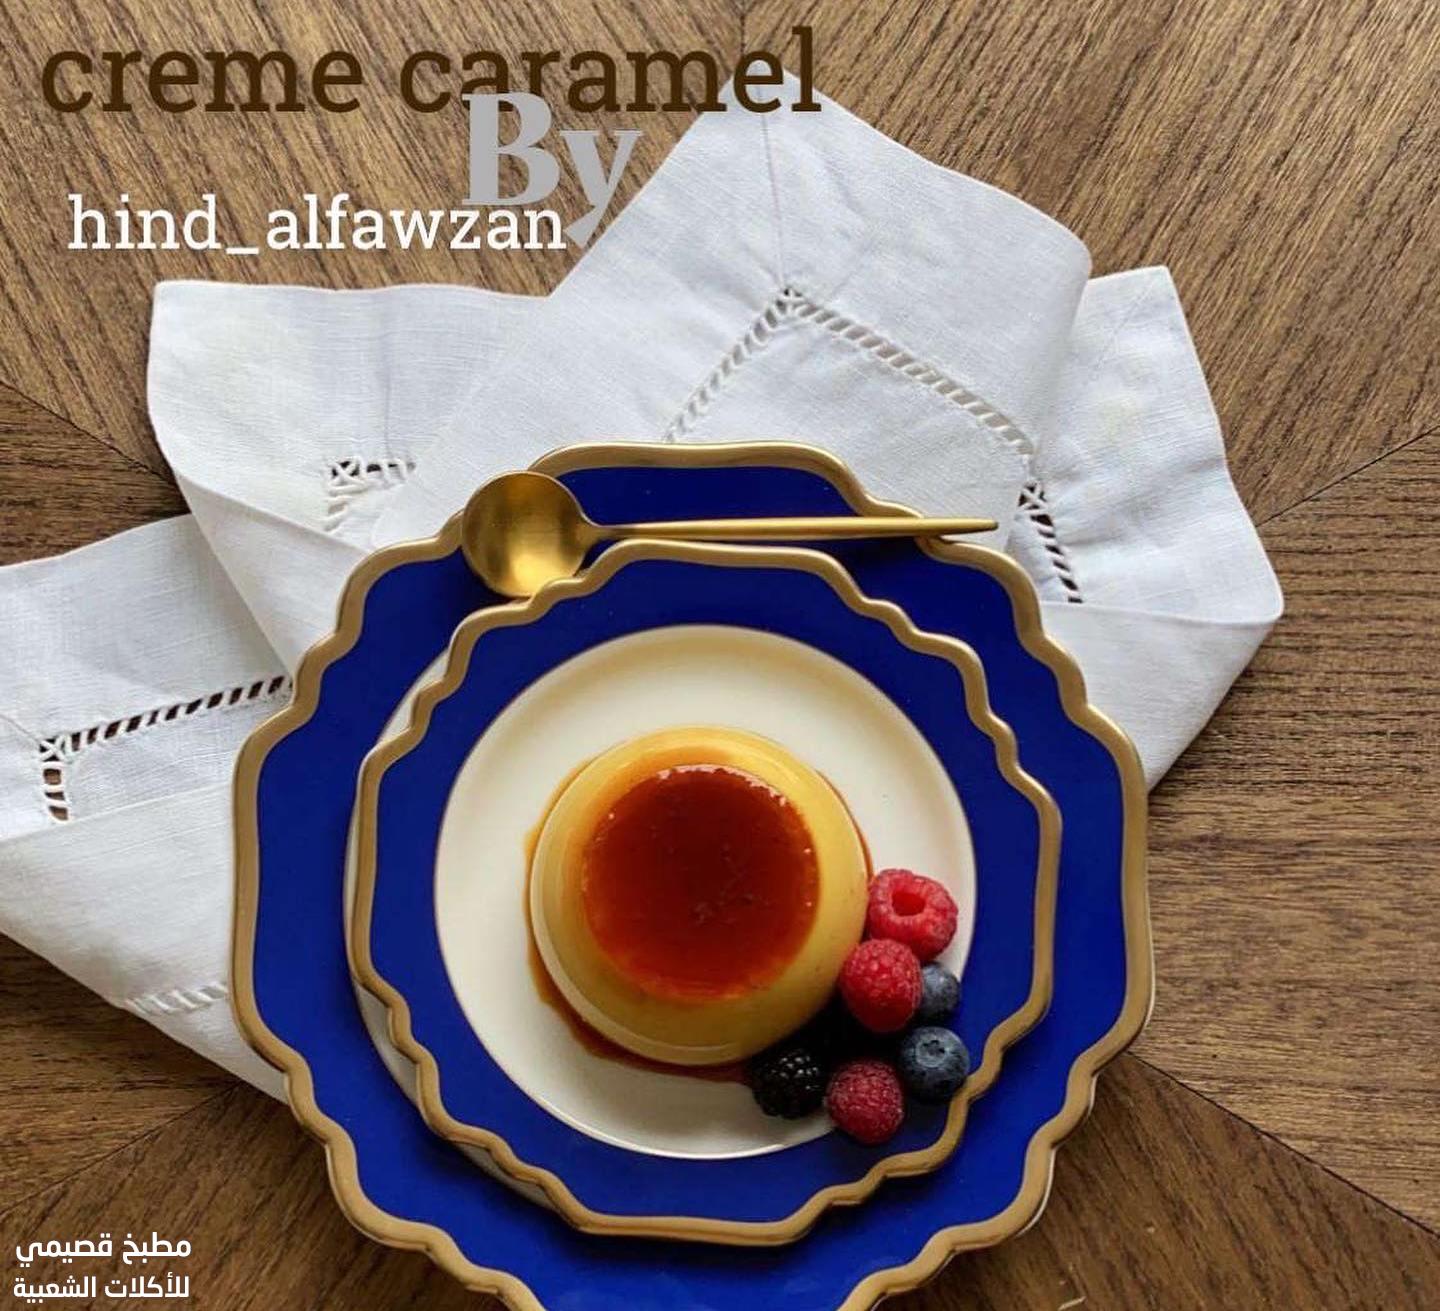 صورة وصفة كريم كراميل هند الفوزان creme caramel recipe with pictures